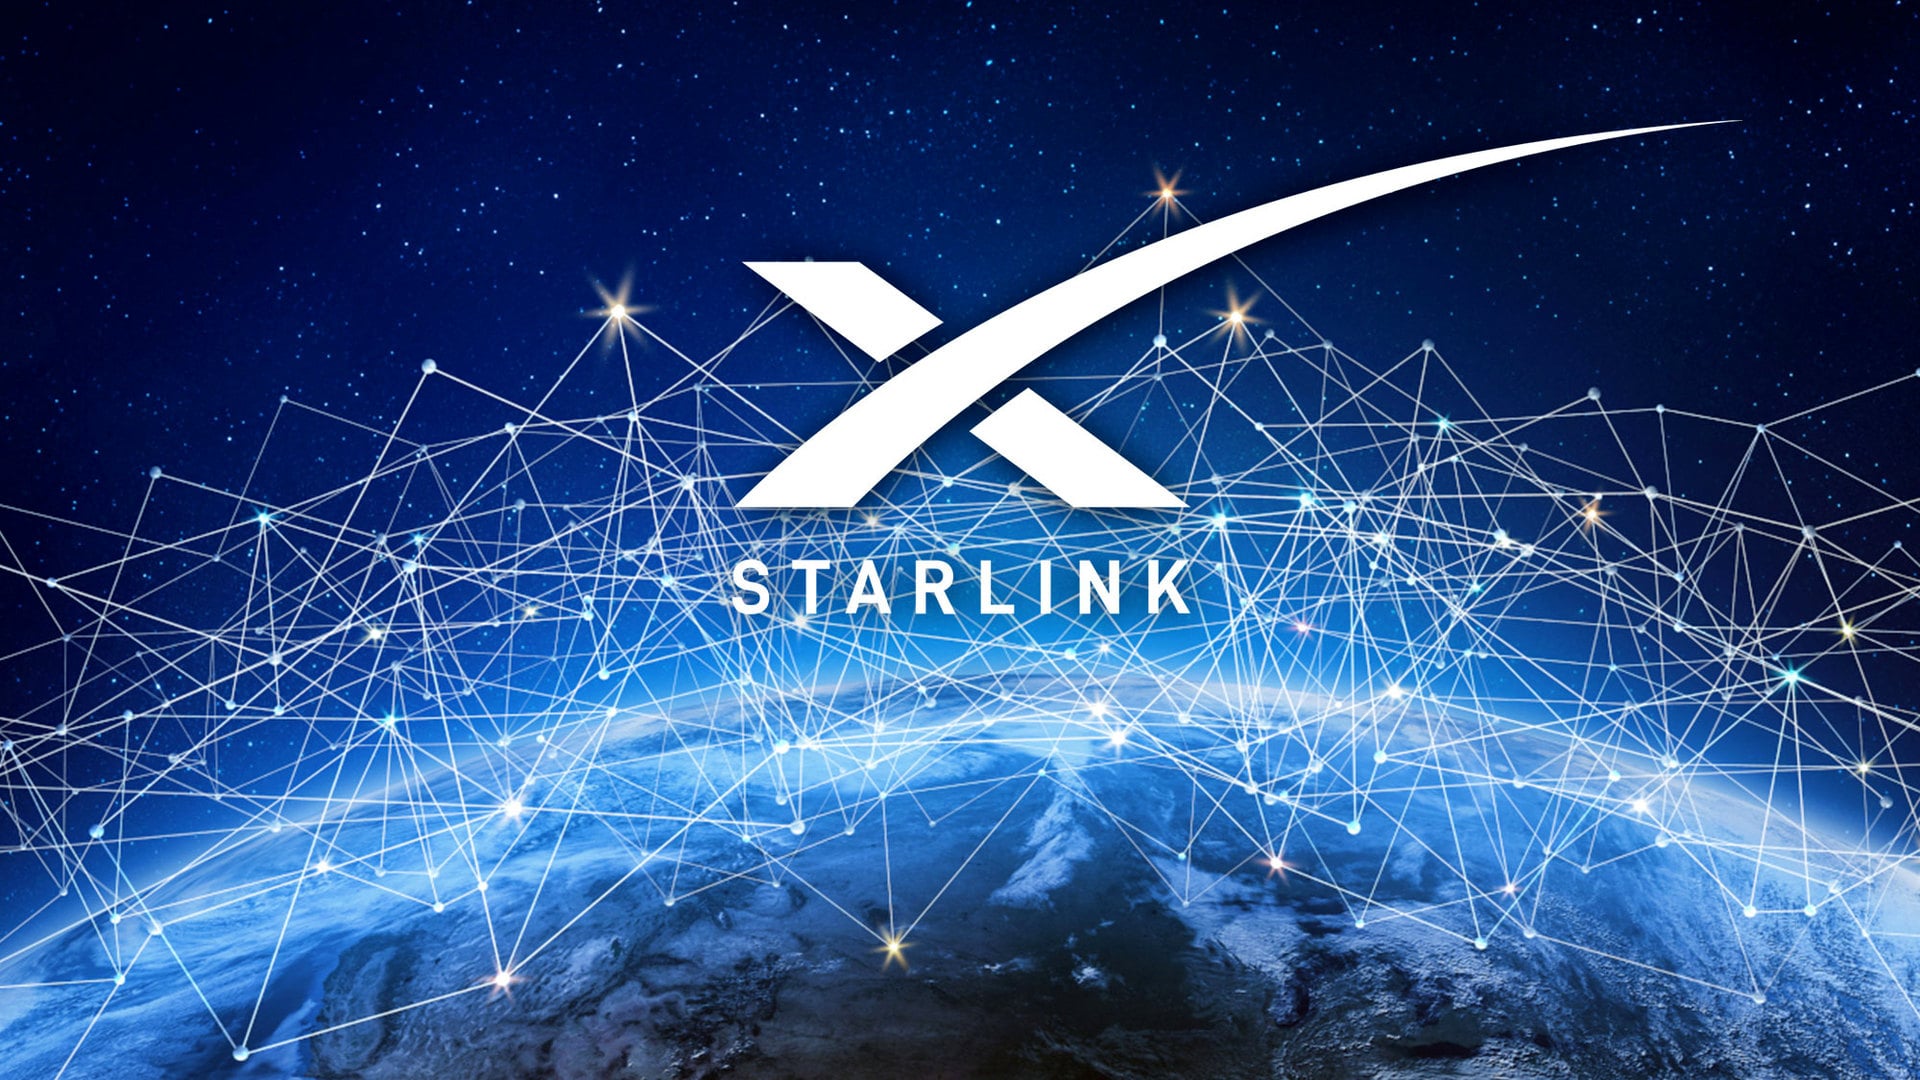 Starlink Satellites Eliminate Wired Internet | TeraNews.net